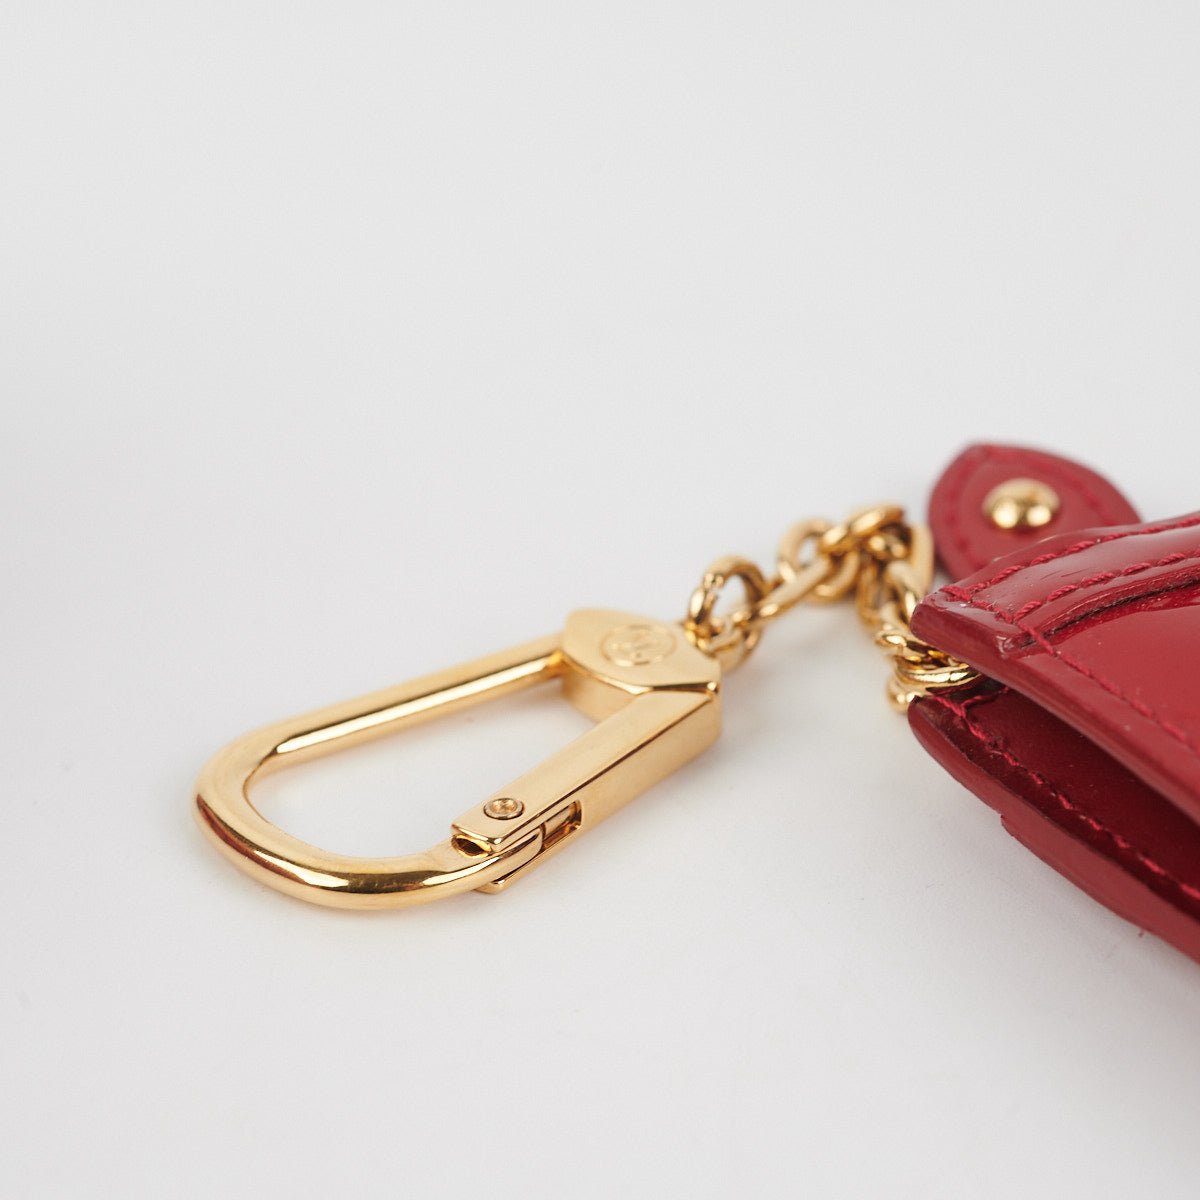 Louis Vuitton Vernis Key Pouch Review/Rant! 